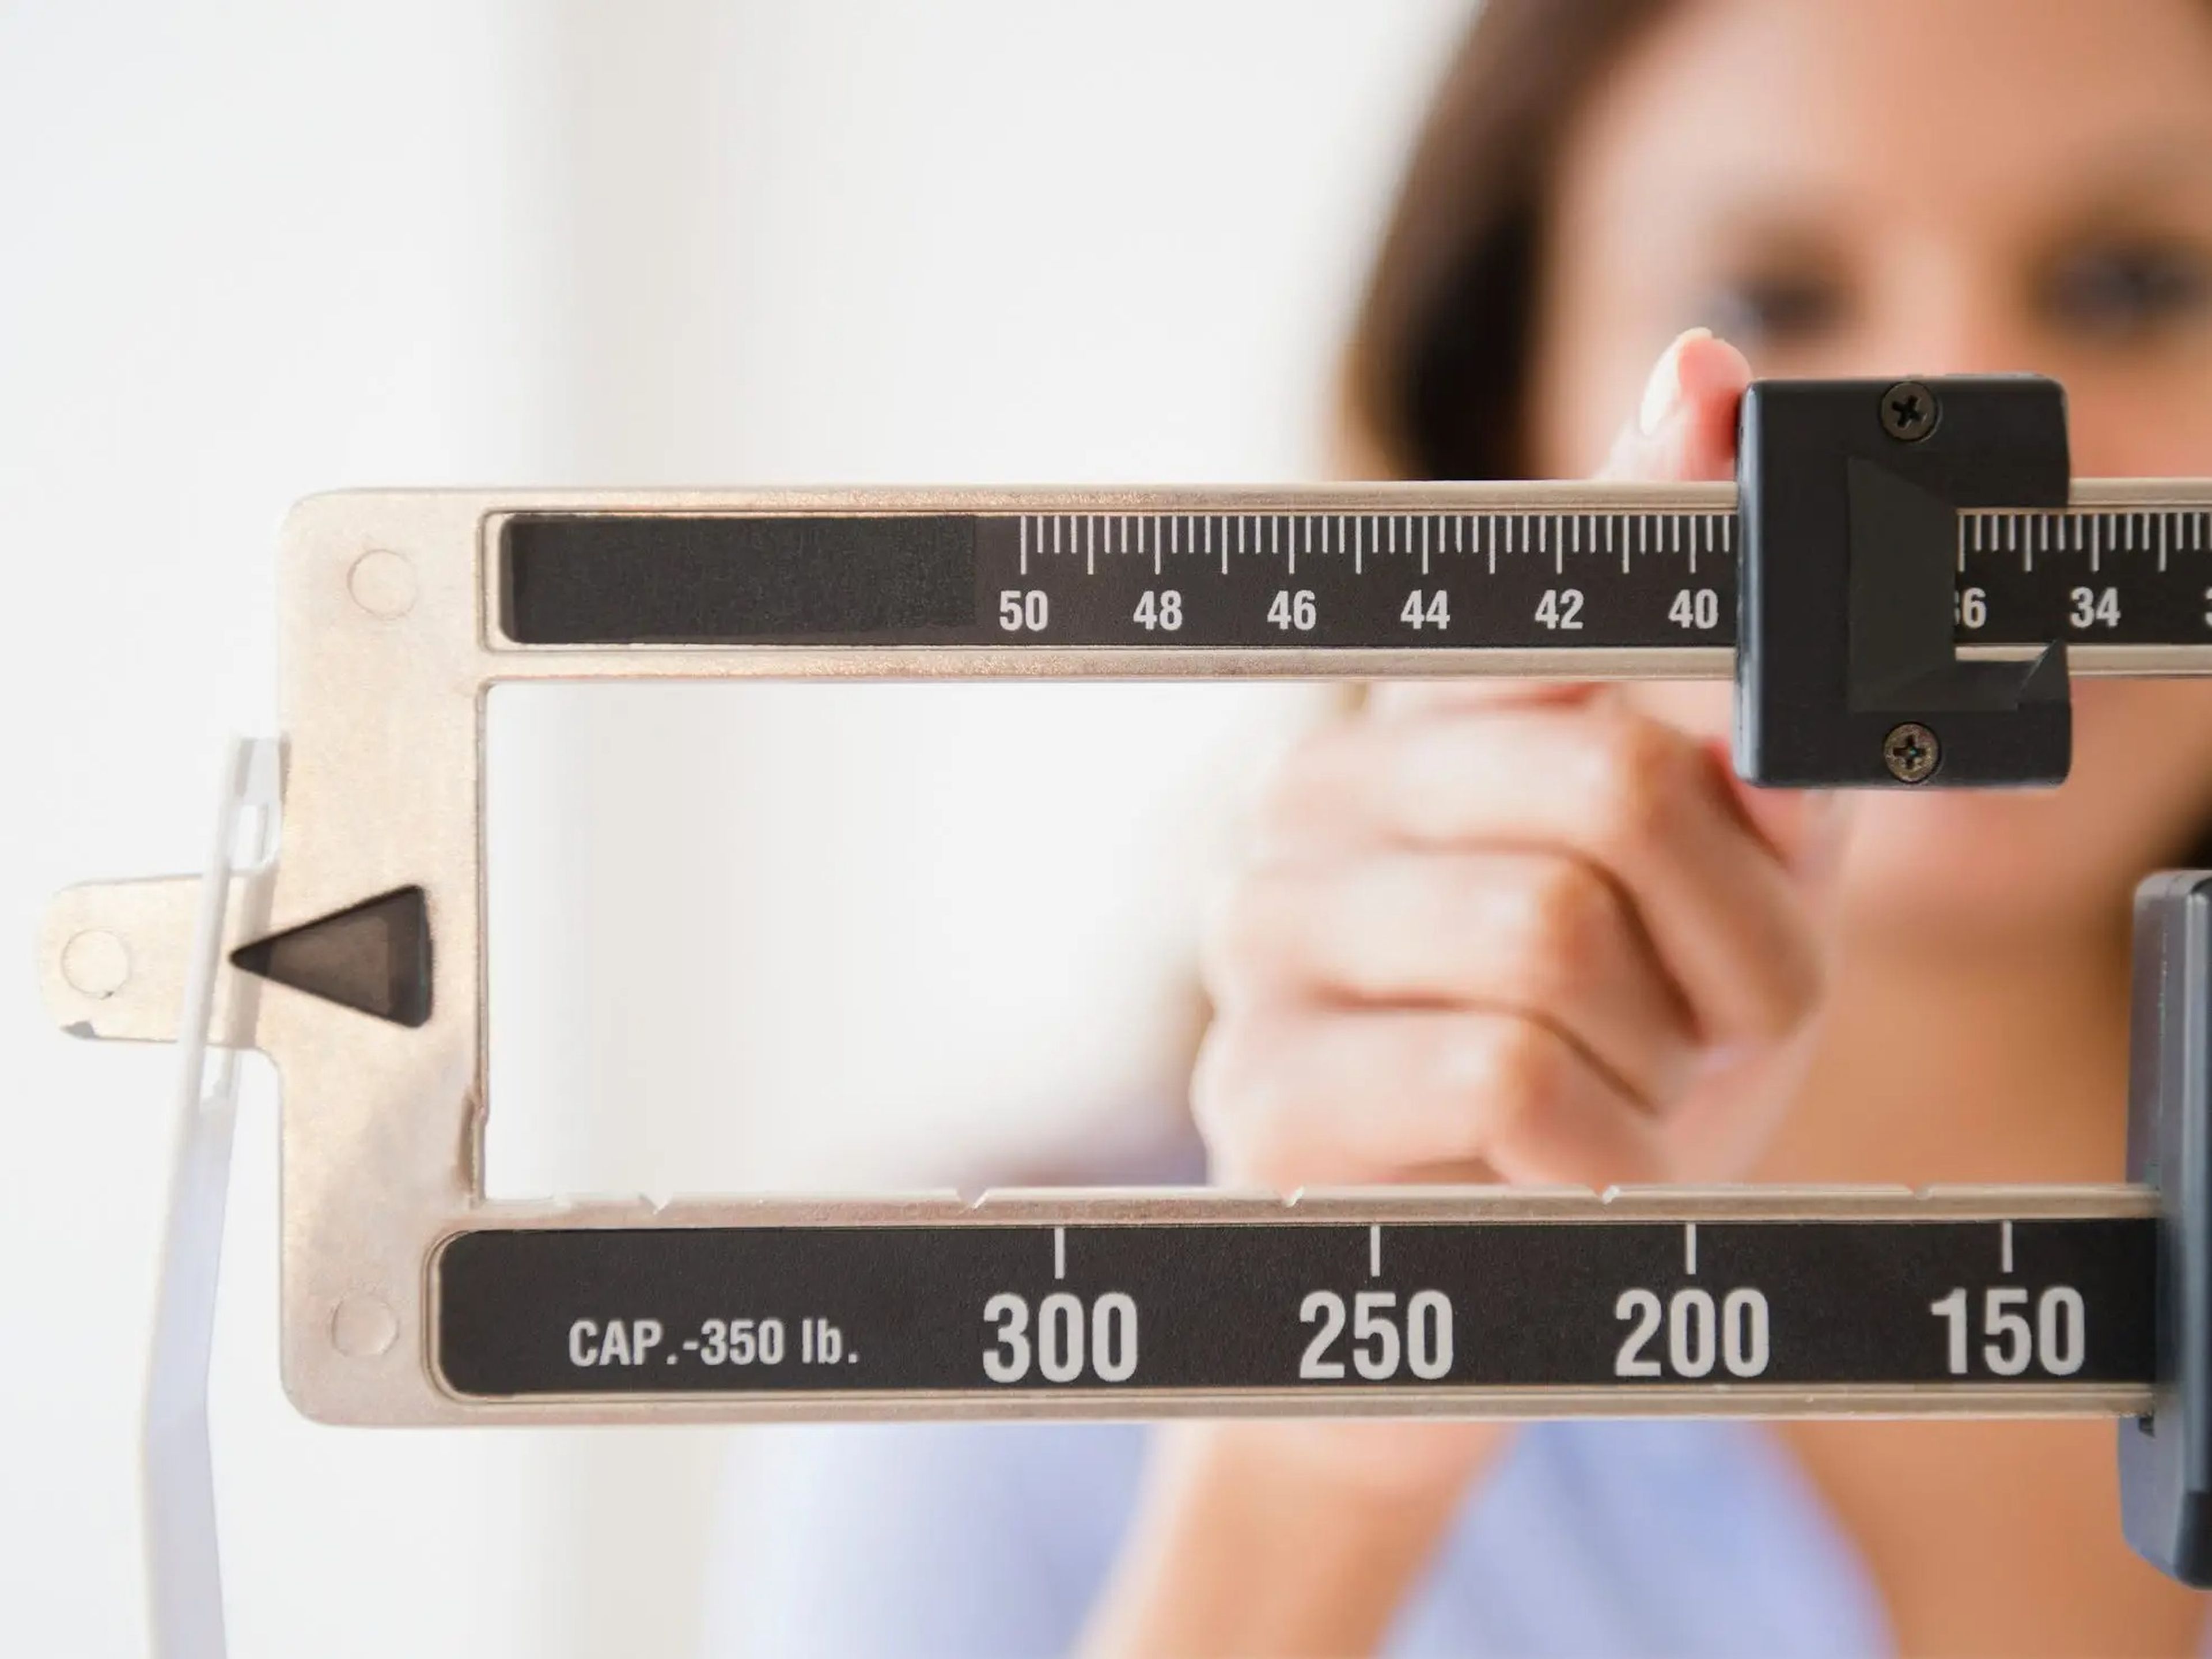 El aumento de peso no es algo malo, pero si no es un objetivo, ser consciente de las porciones puede ayudarte.